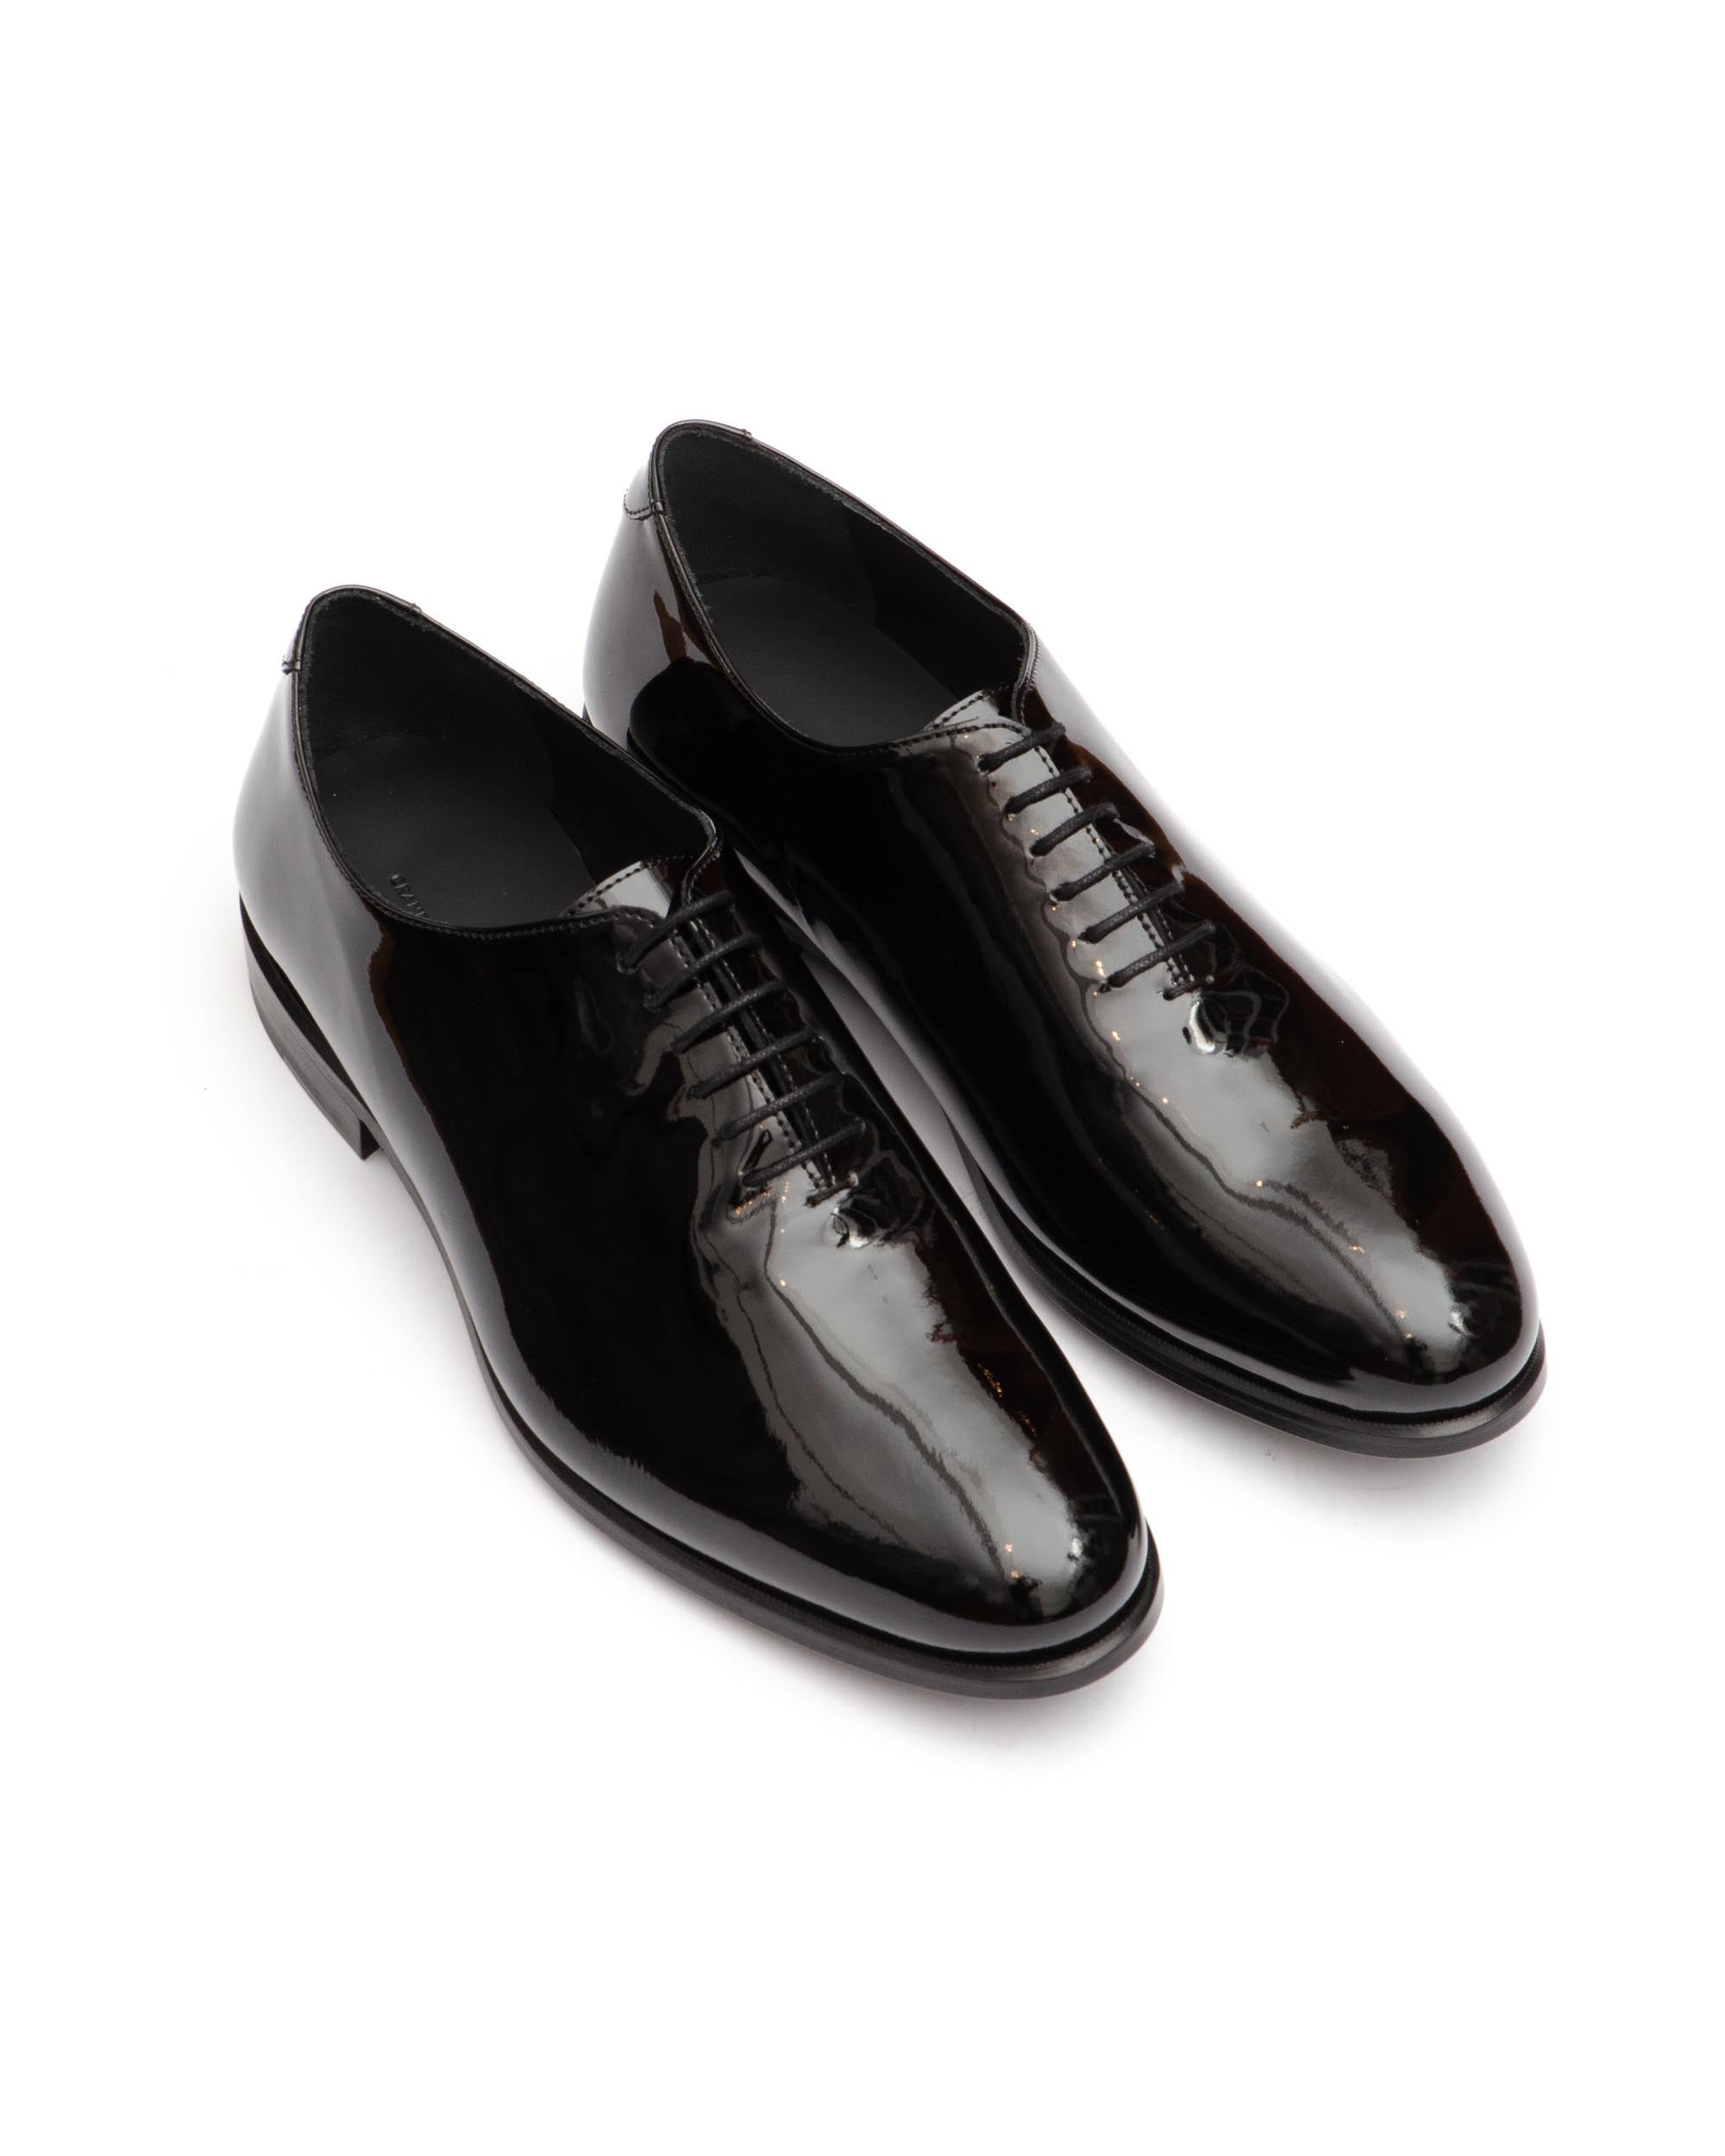 Black Patent Leather Whole Cut Shoe